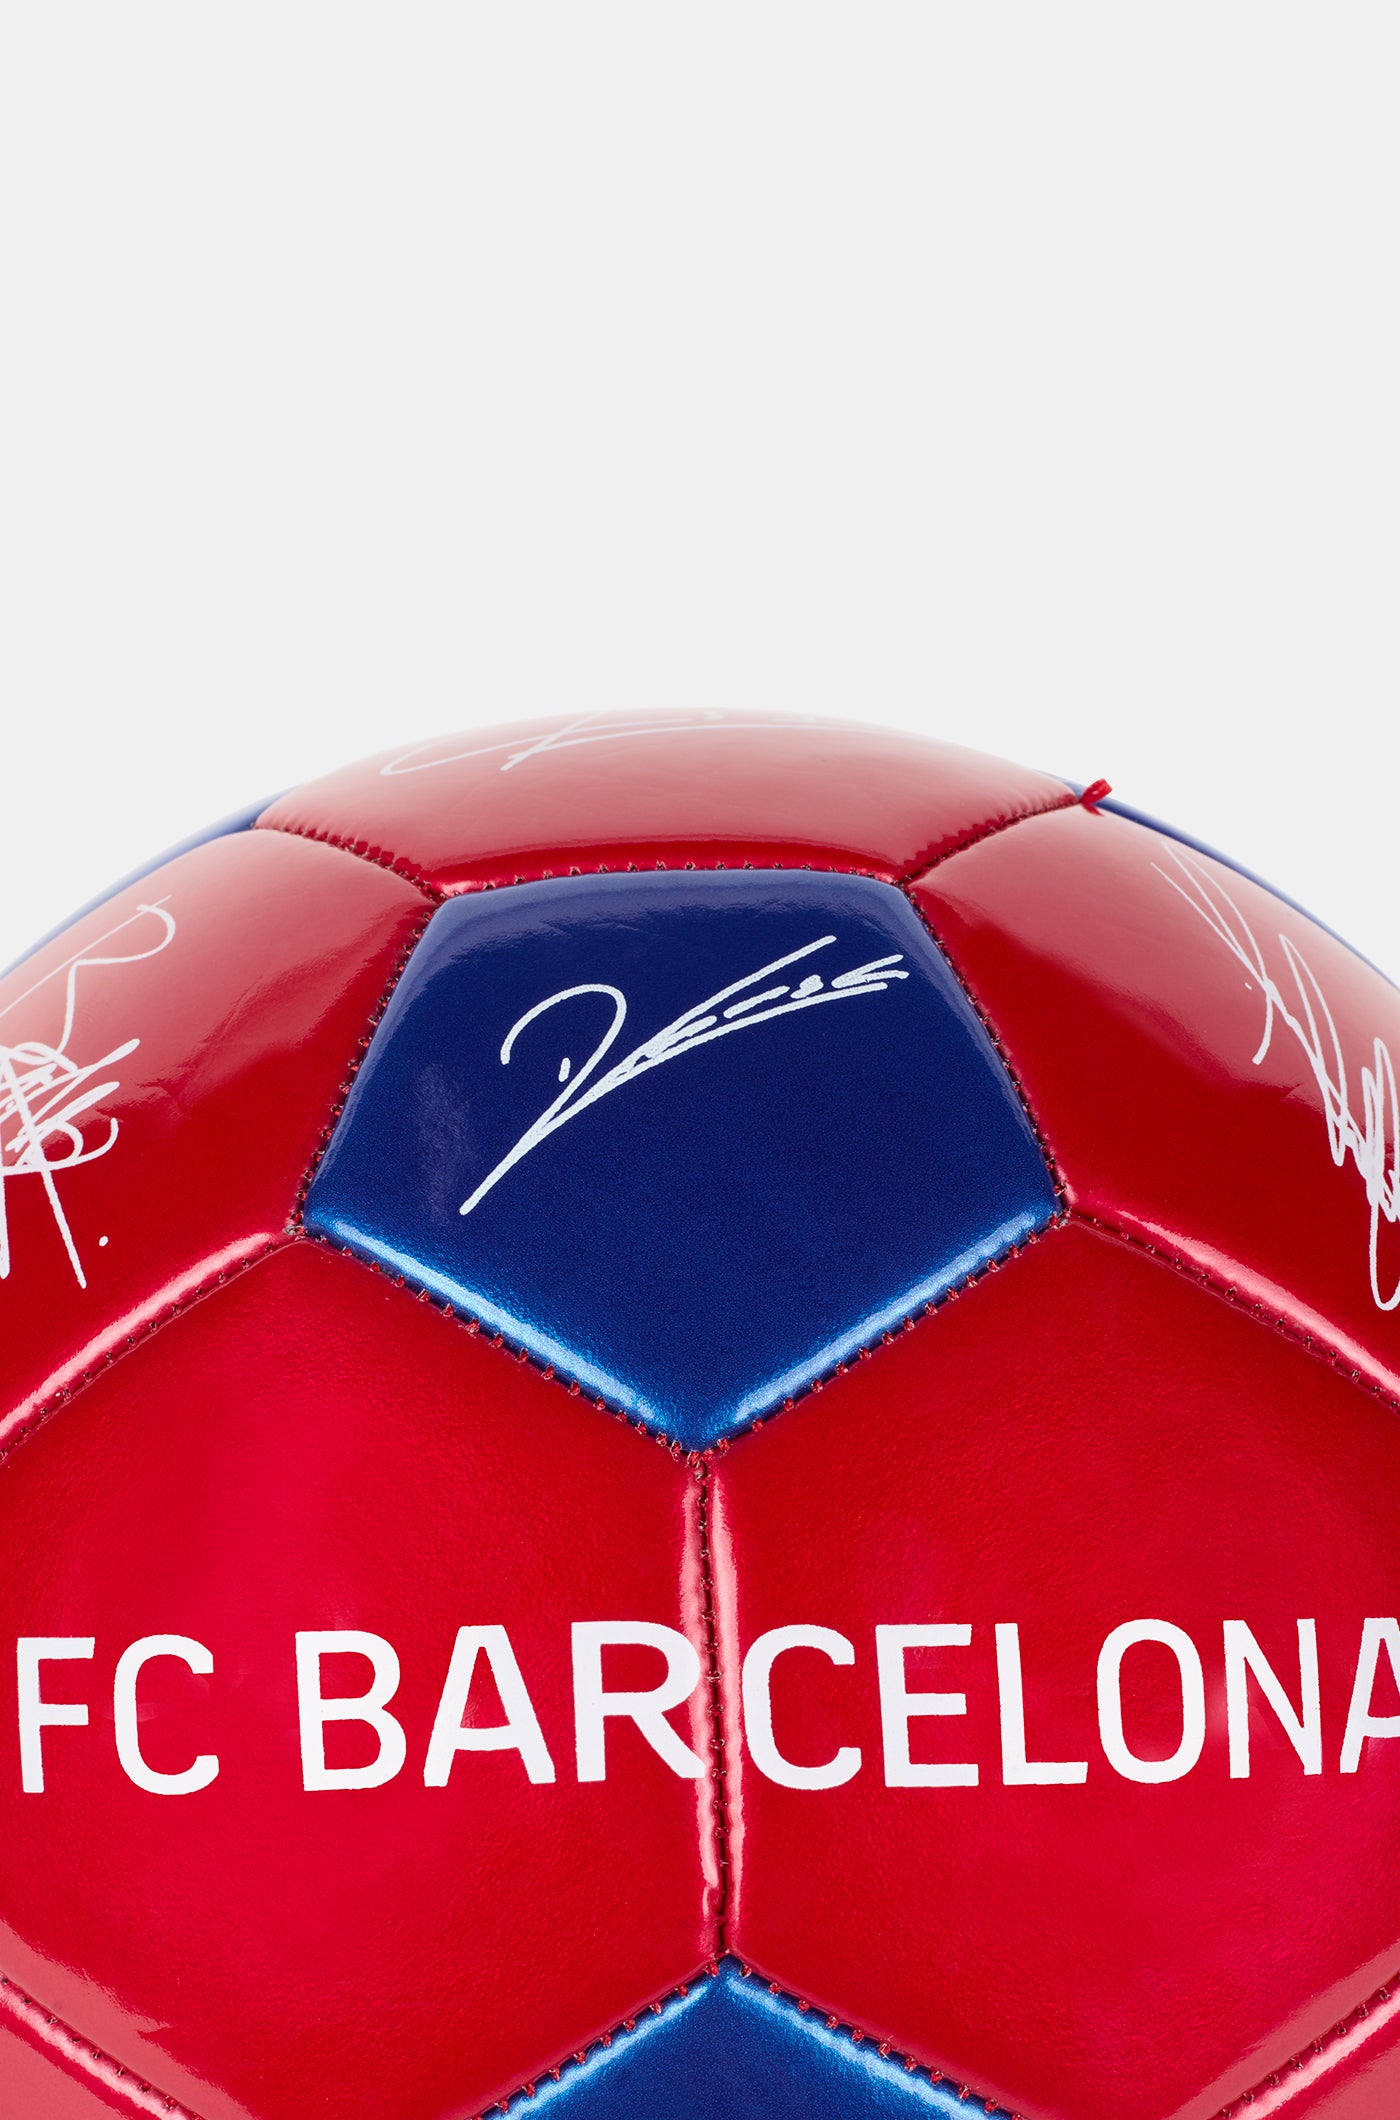 Ball FC Barcelona - Groß 